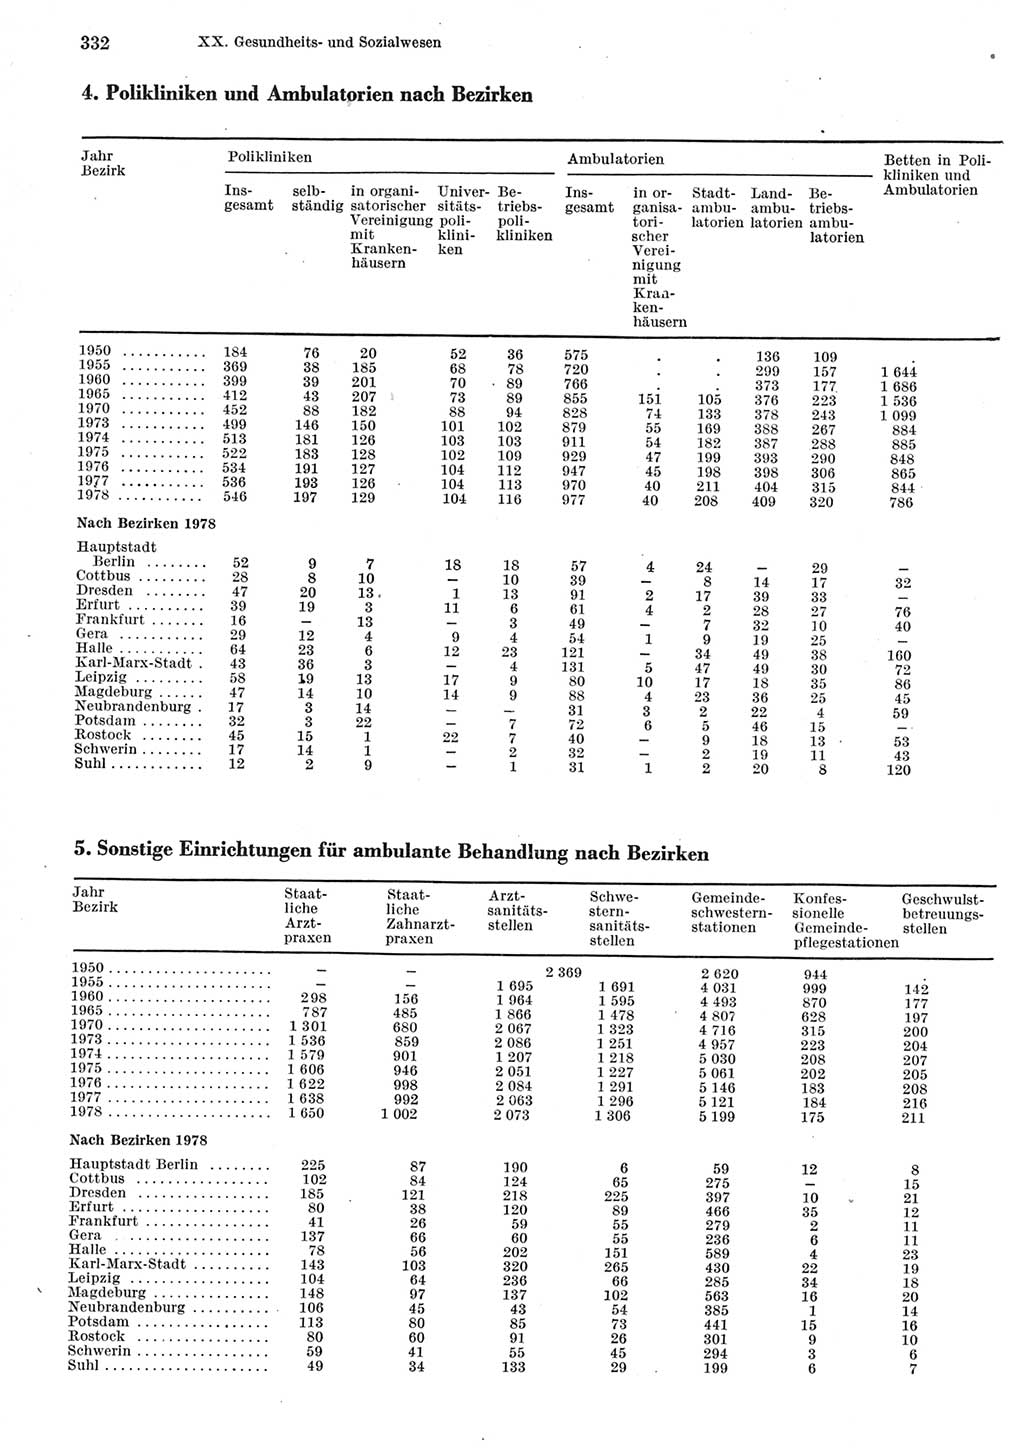 Statistisches Jahrbuch der Deutschen Demokratischen Republik (DDR) 1979, Seite 332 (Stat. Jb. DDR 1979, S. 332)